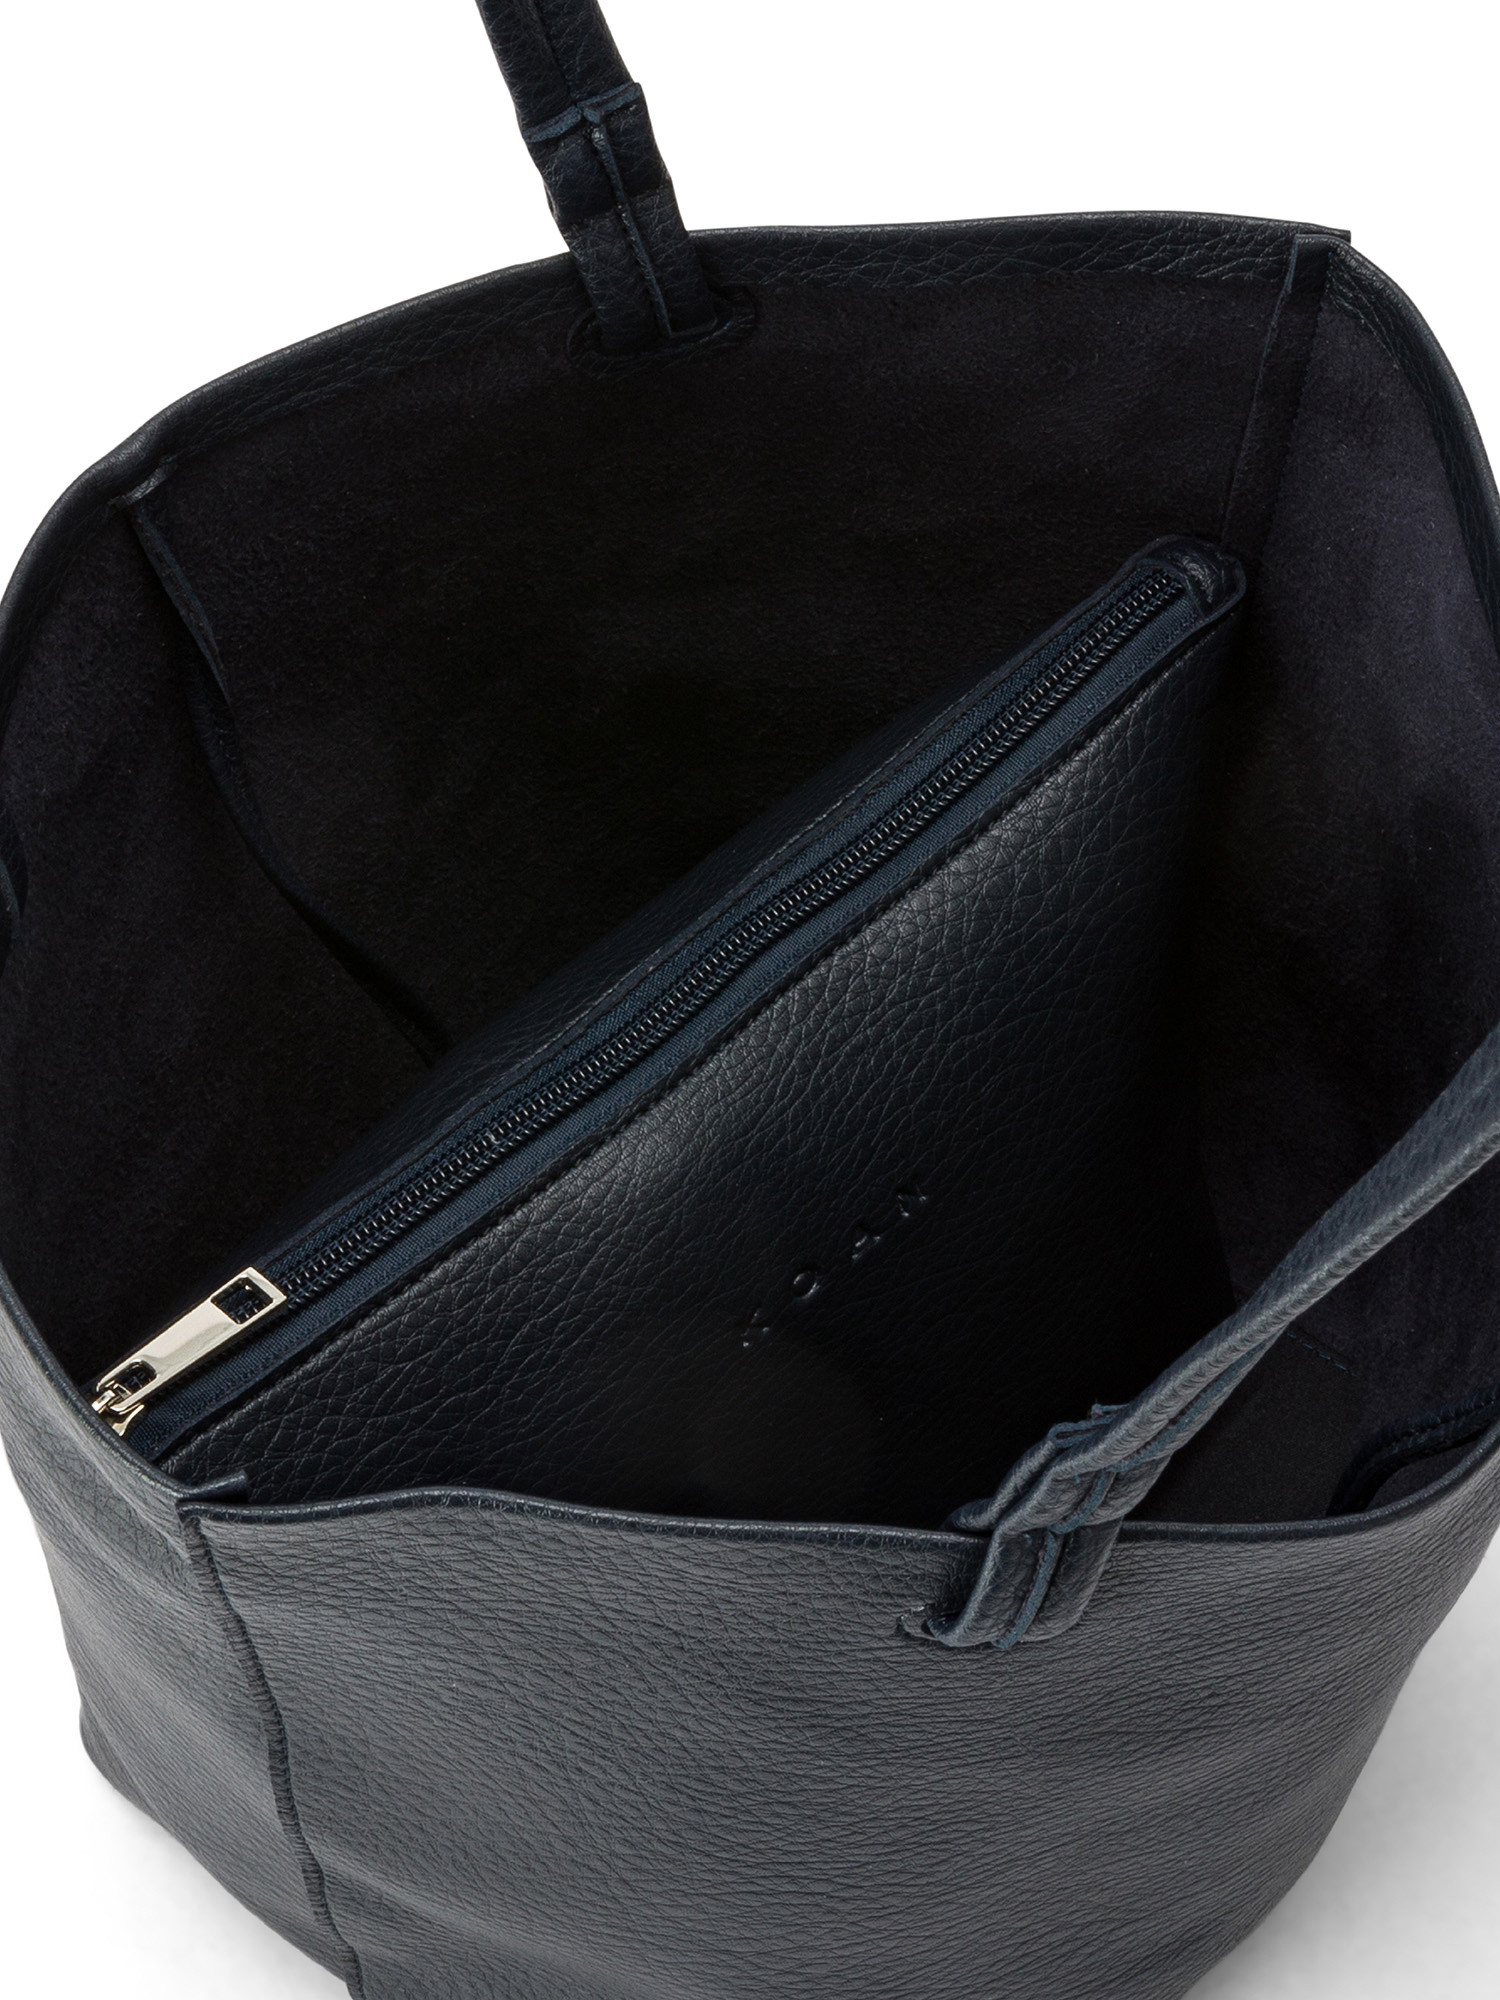 Koan - Shopping bag, Blu scuro, large image number 2